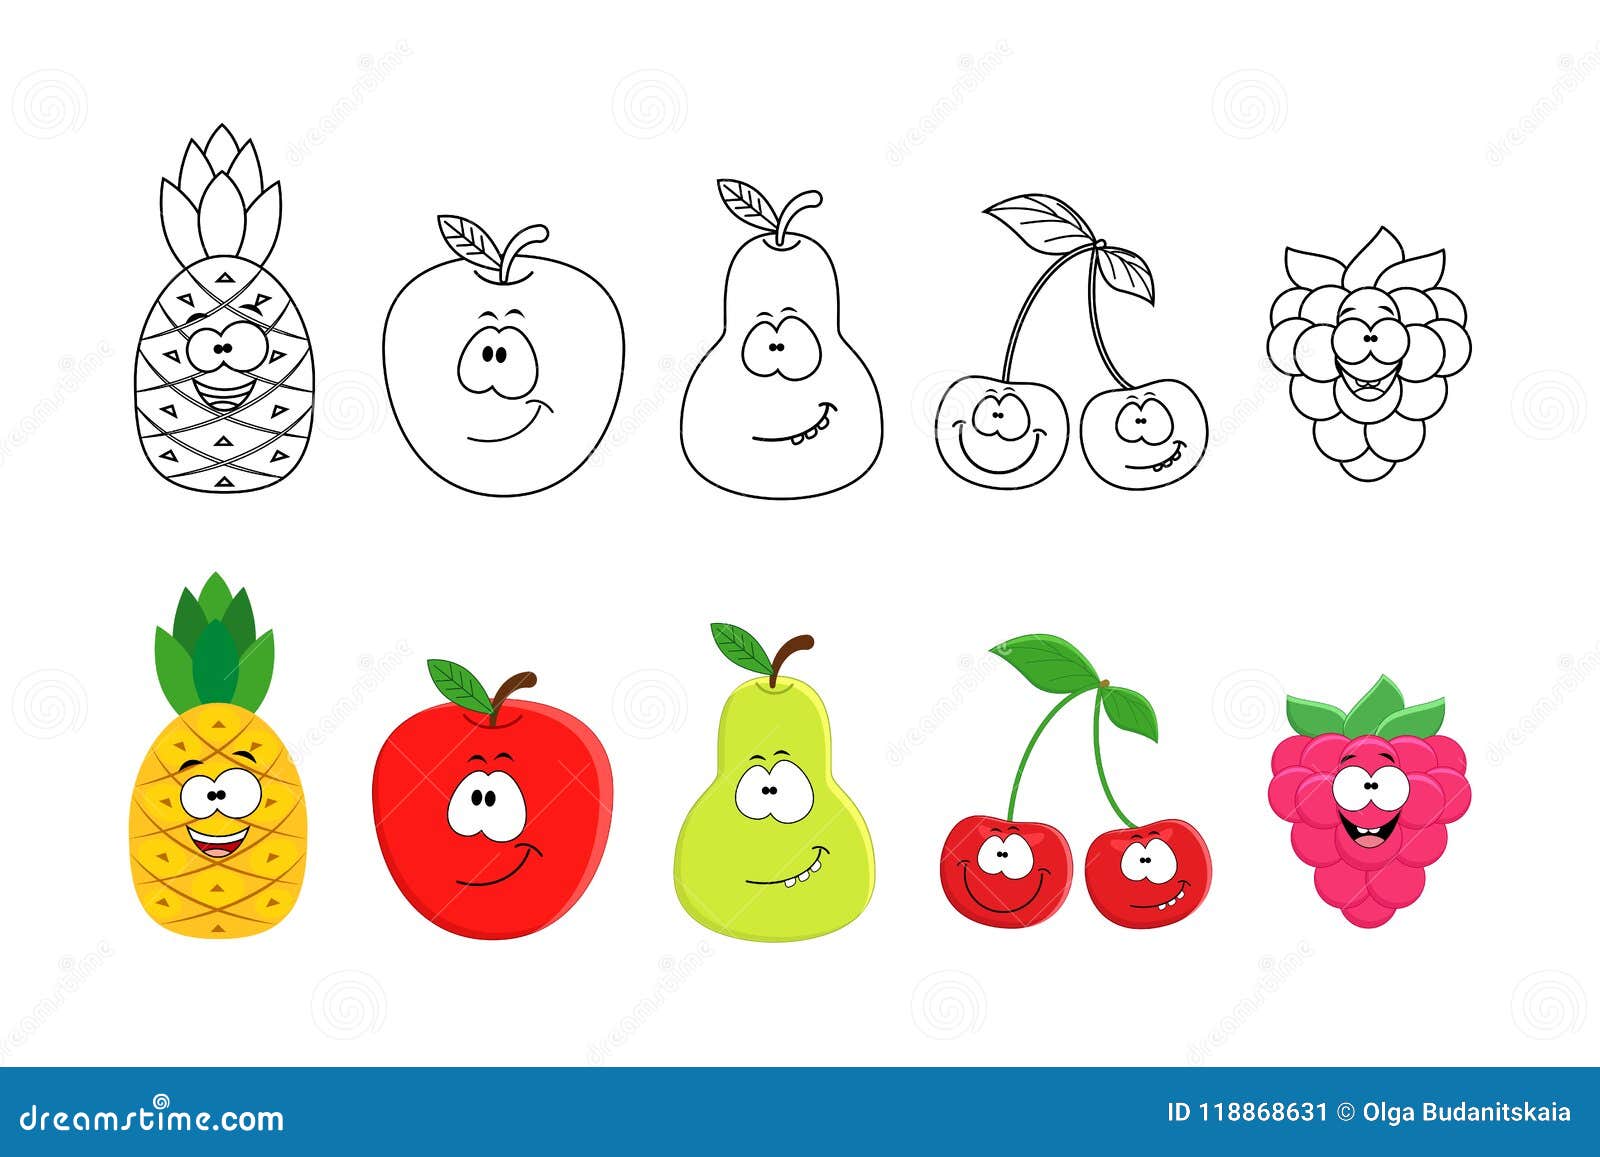 50 Desenhos de Frutas para Colorir e Imprimir - Online Cursos Gratuitos   Frutas para colorir, Coisas para desenhar, Páginas de colorir com animais